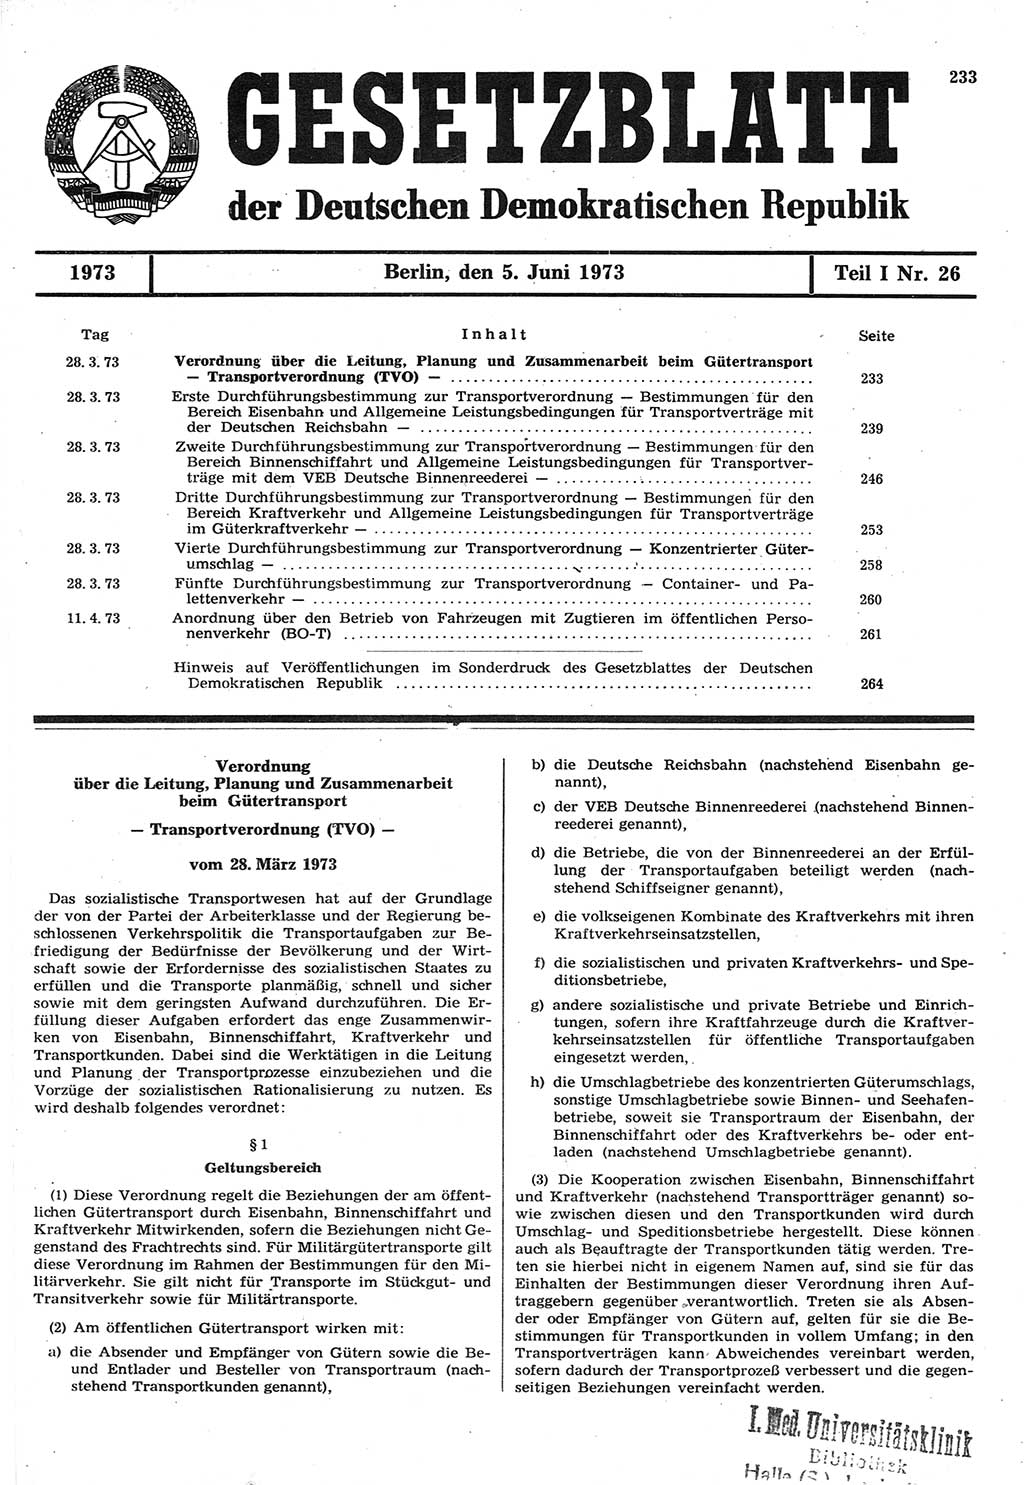 Gesetzblatt (GBl.) der Deutschen Demokratischen Republik (DDR) Teil Ⅰ 1973, Seite 233 (GBl. DDR Ⅰ 1973, S. 233)